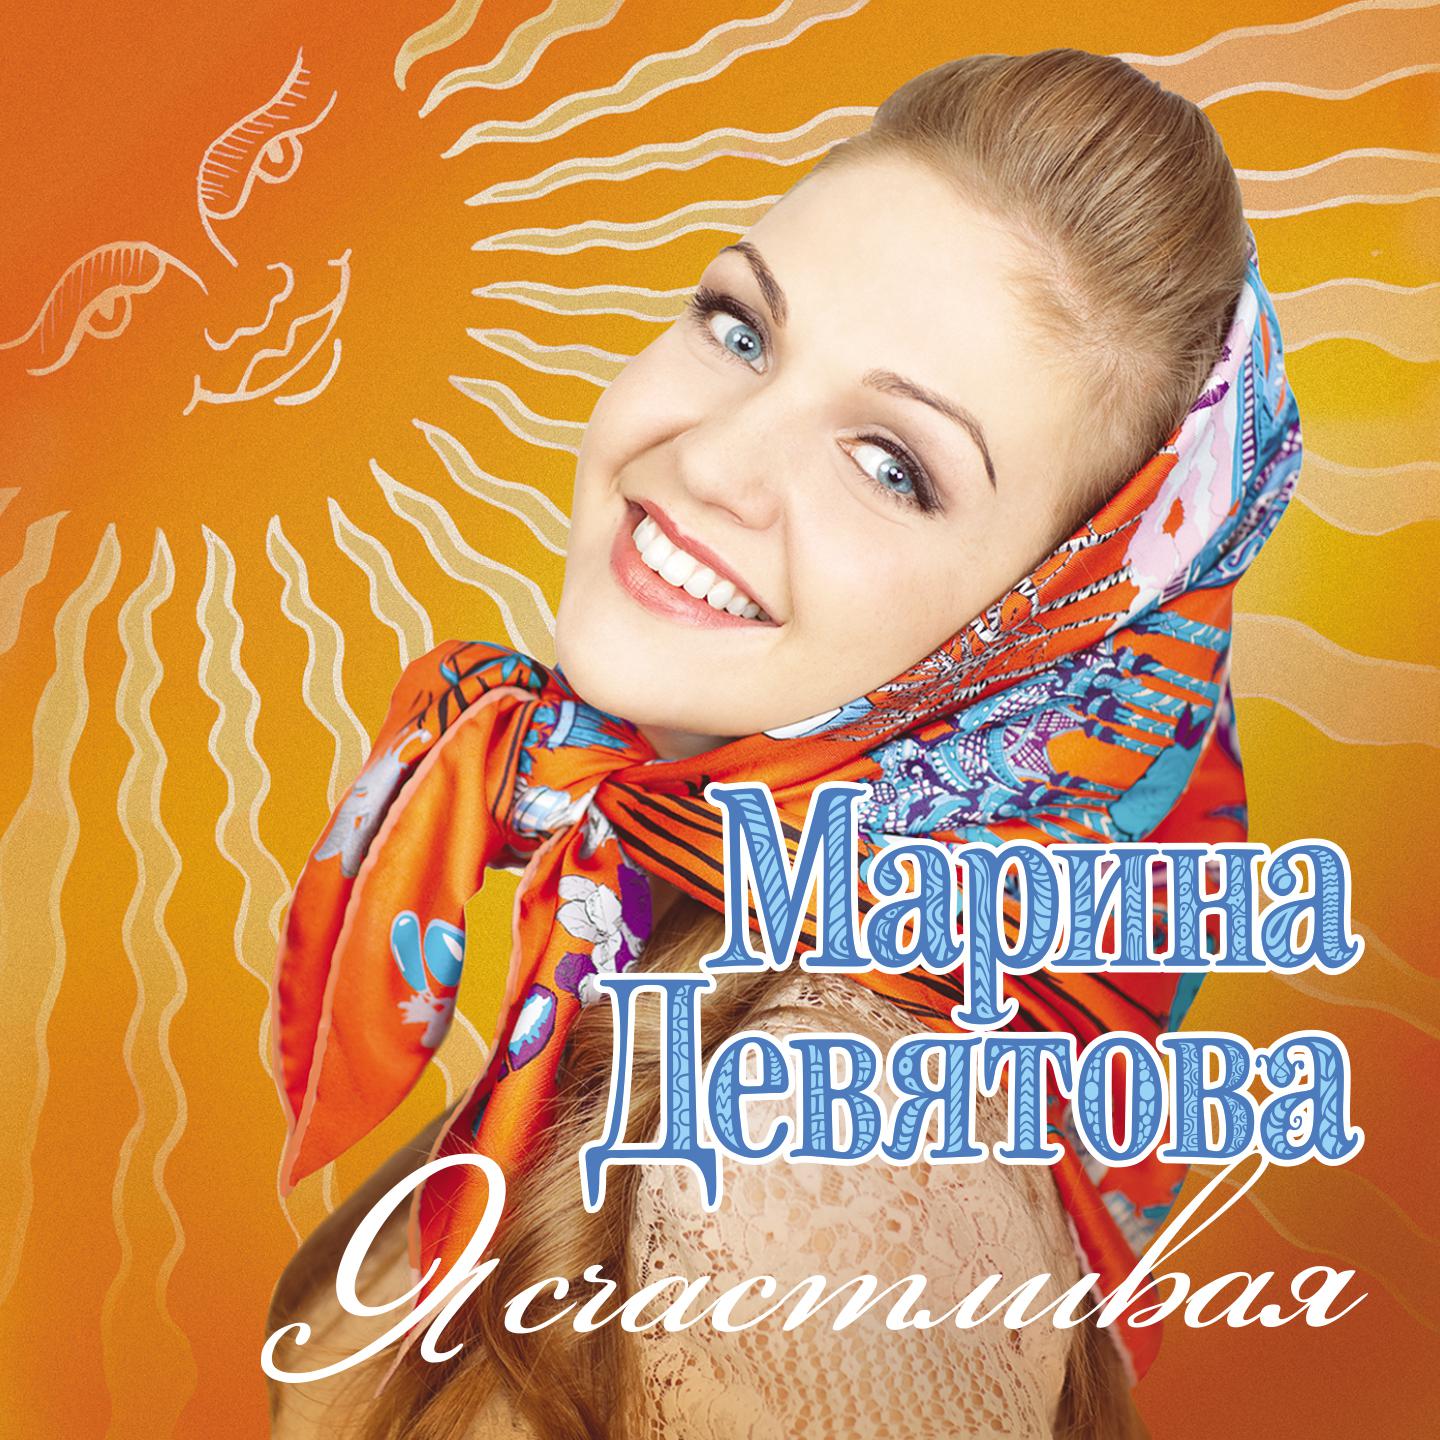 Российские песни альбомы. Марины Девятовой - я счастливая (2011).